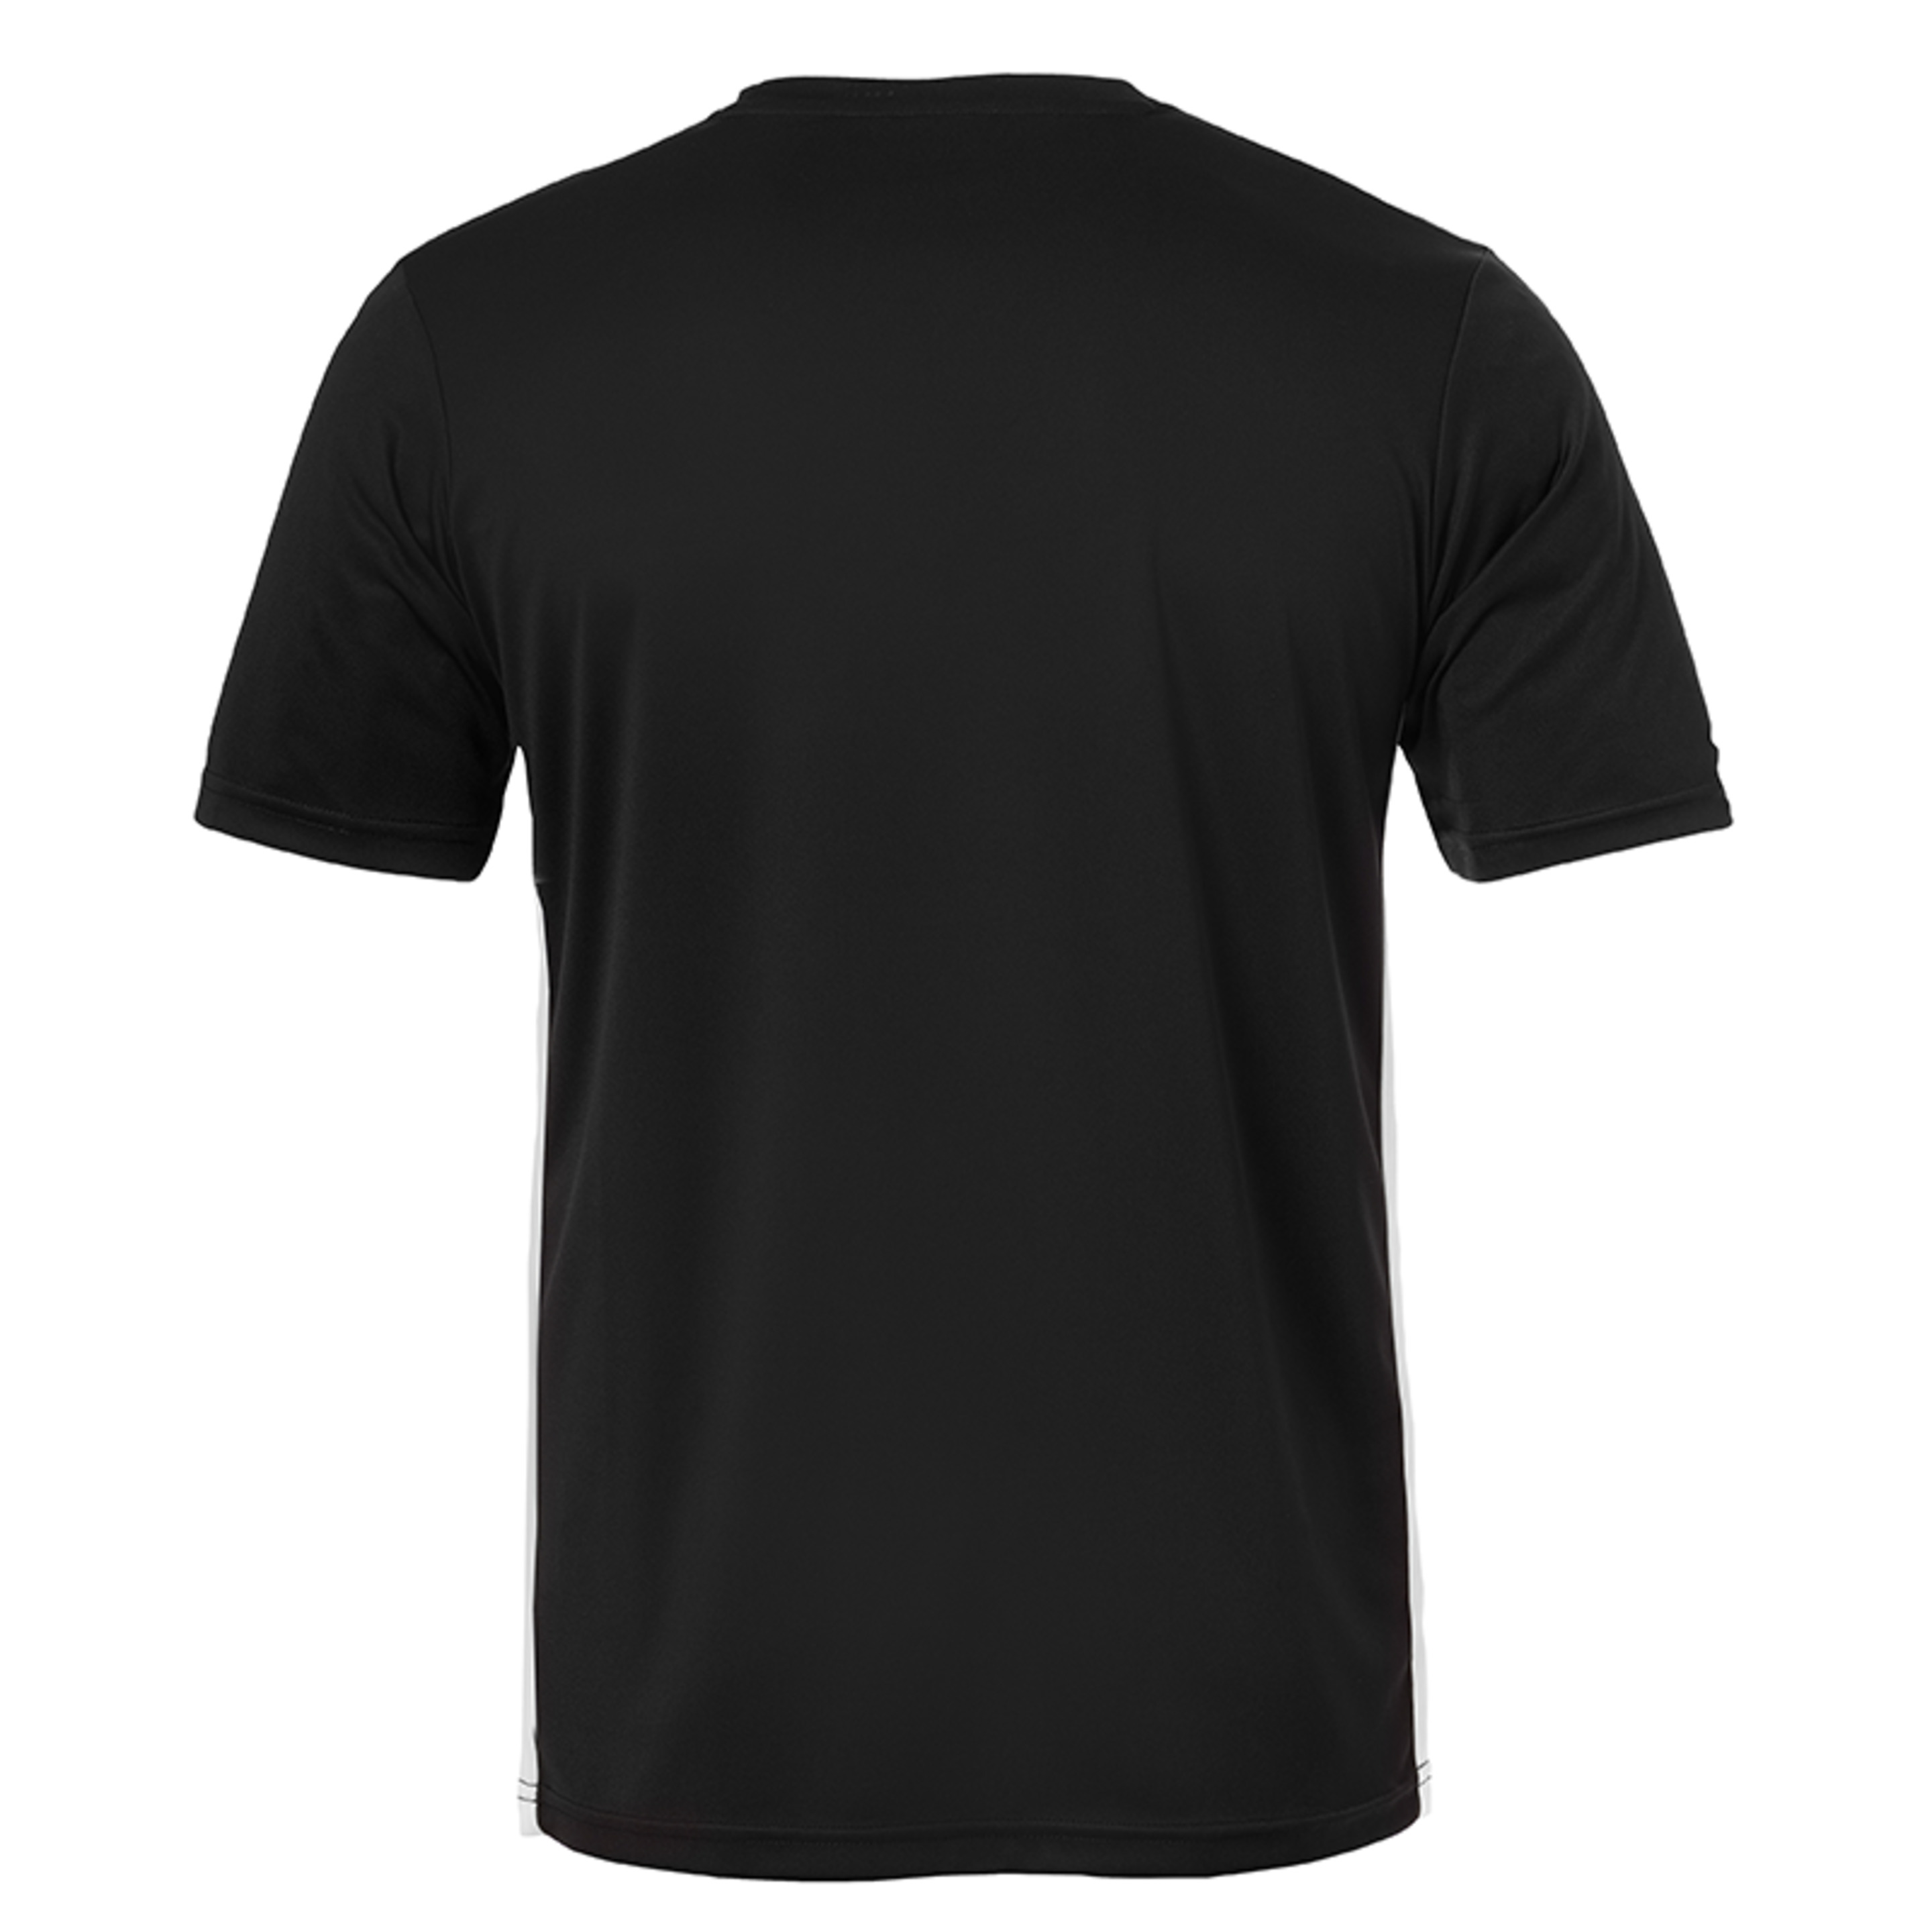 Essential Camiseta Mc Negro/blanco Uhlsport